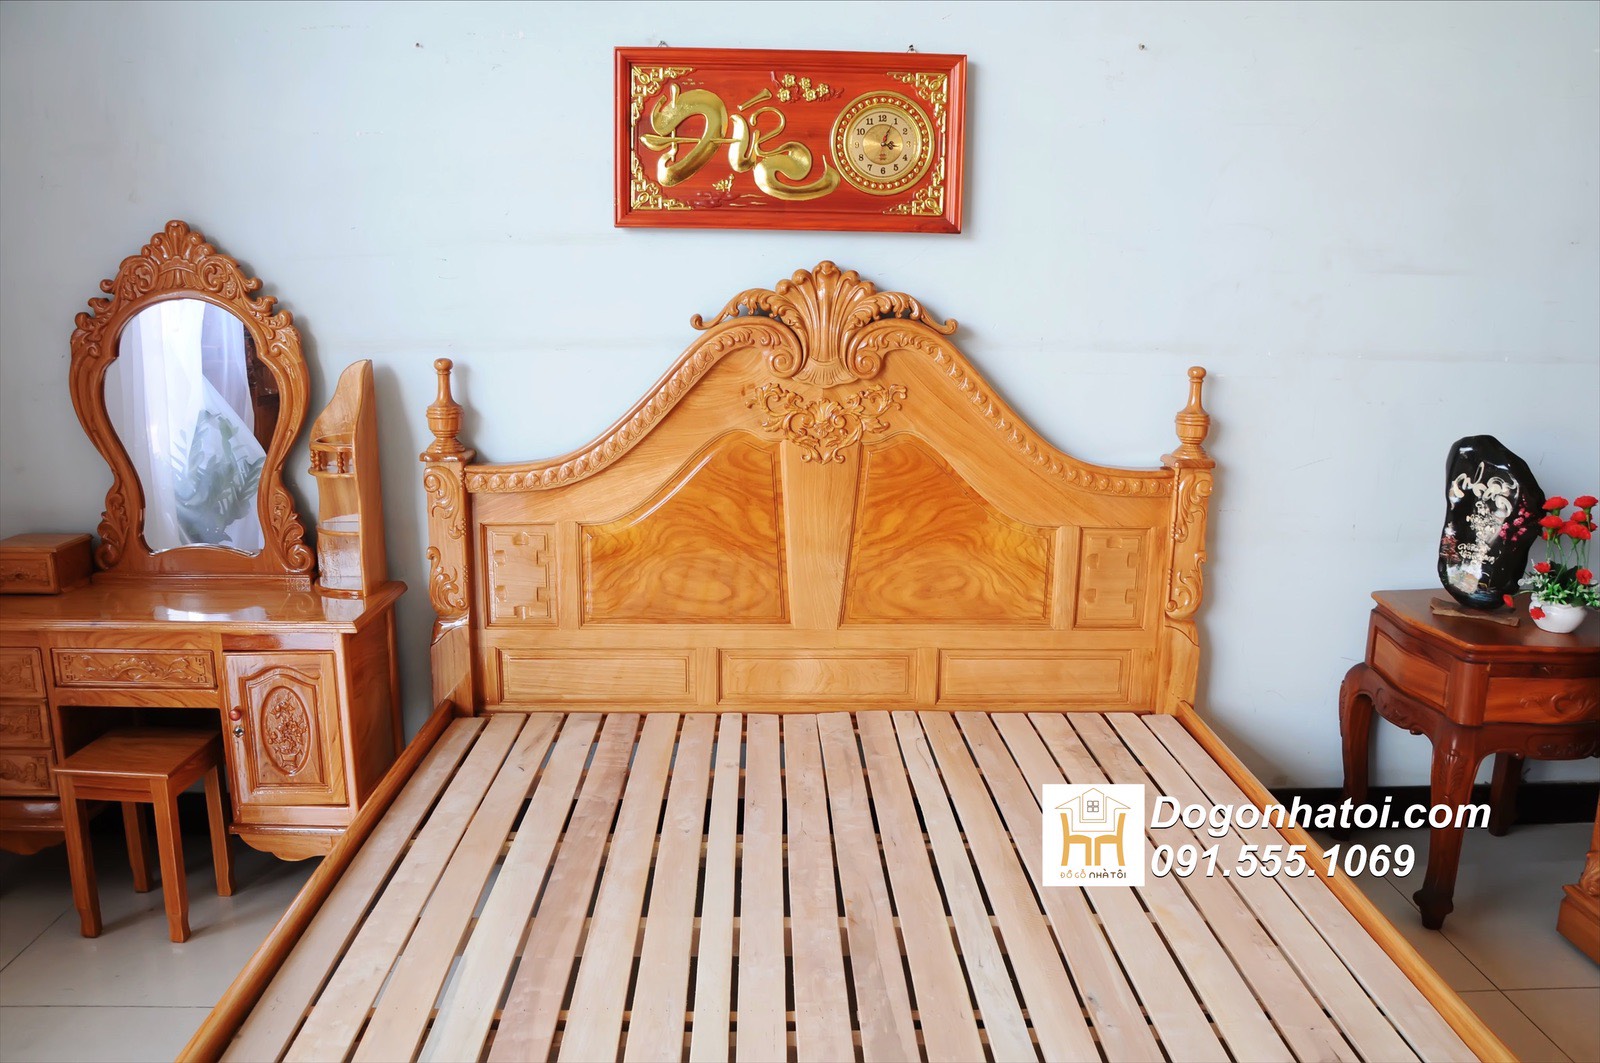 Giường gỗ gõ đỏ Nữ Hoàng trụ 10cm đẹp giá rẻ 1m8 - GN301